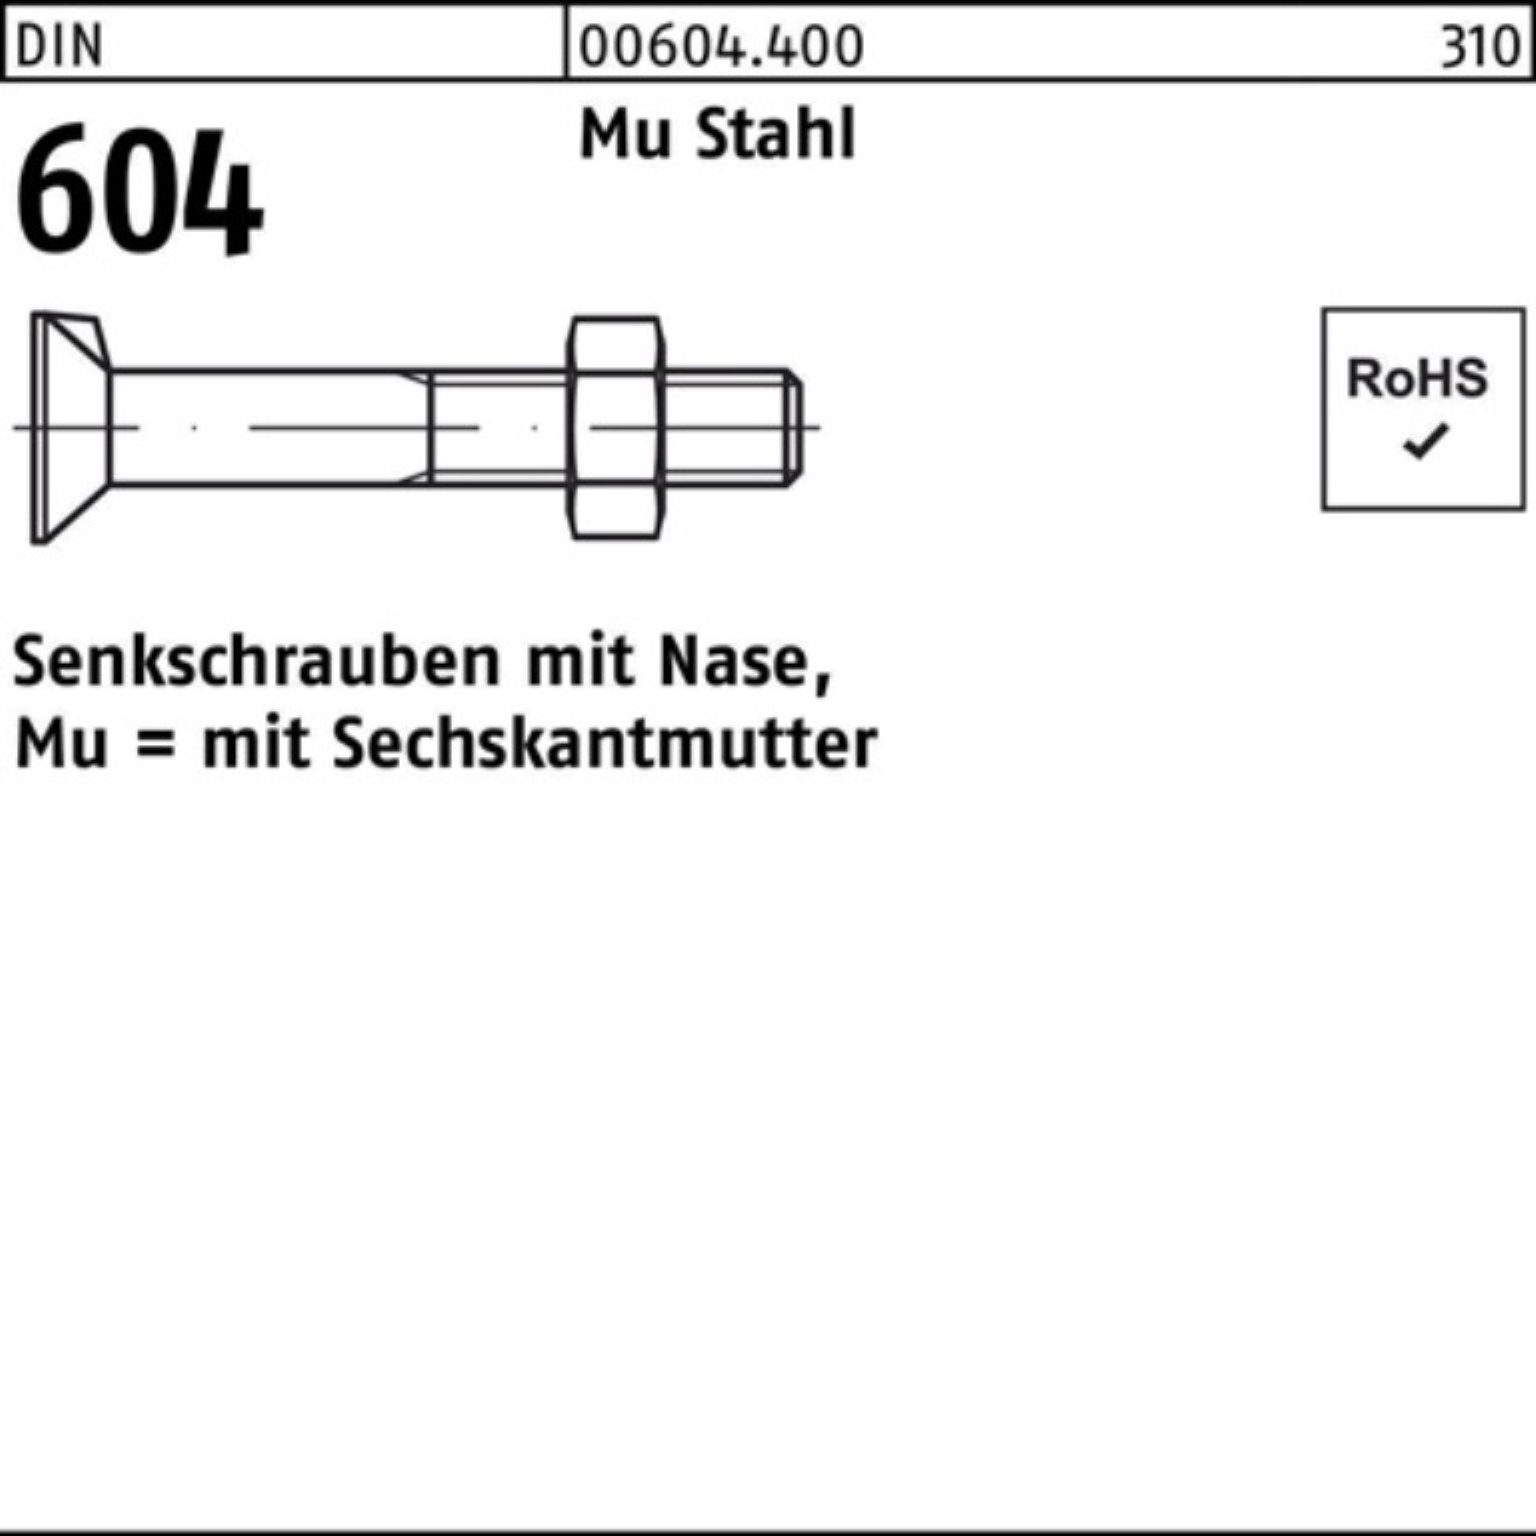 Reyher Senkschraube 100er Pack Senkschraube DIN 604 Nase/6-ktmutter M20x 50 Mu Stahl 4.6 2